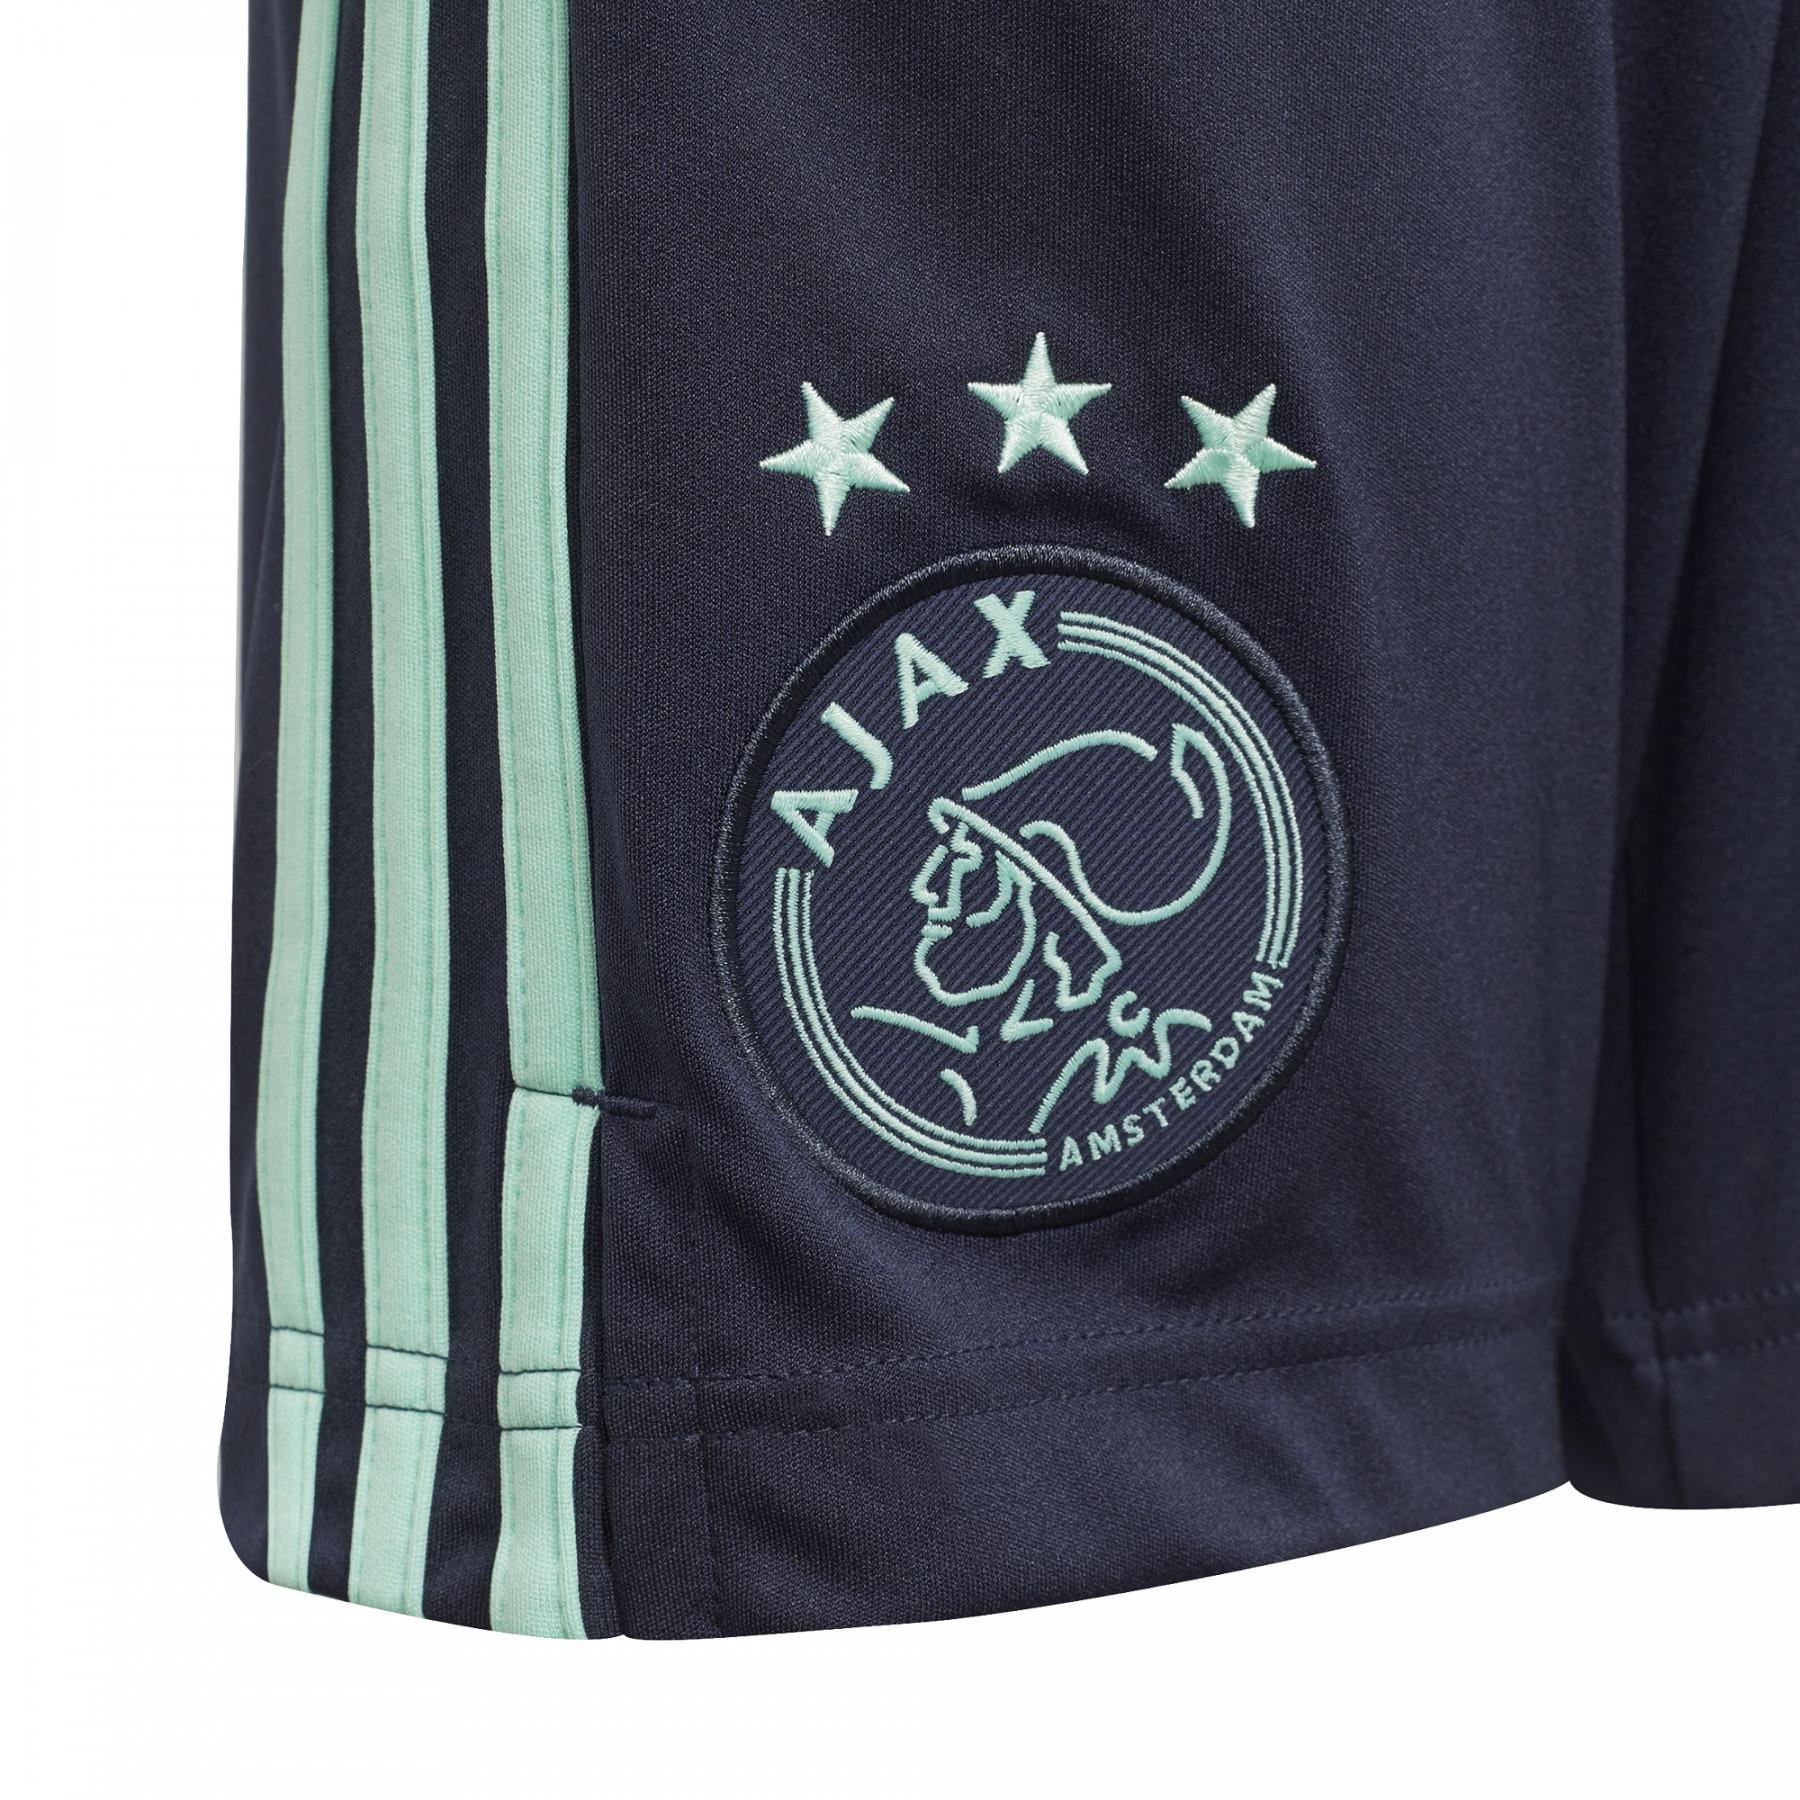 Children's shorts Ajax Amsterdam extérieur 2021/22